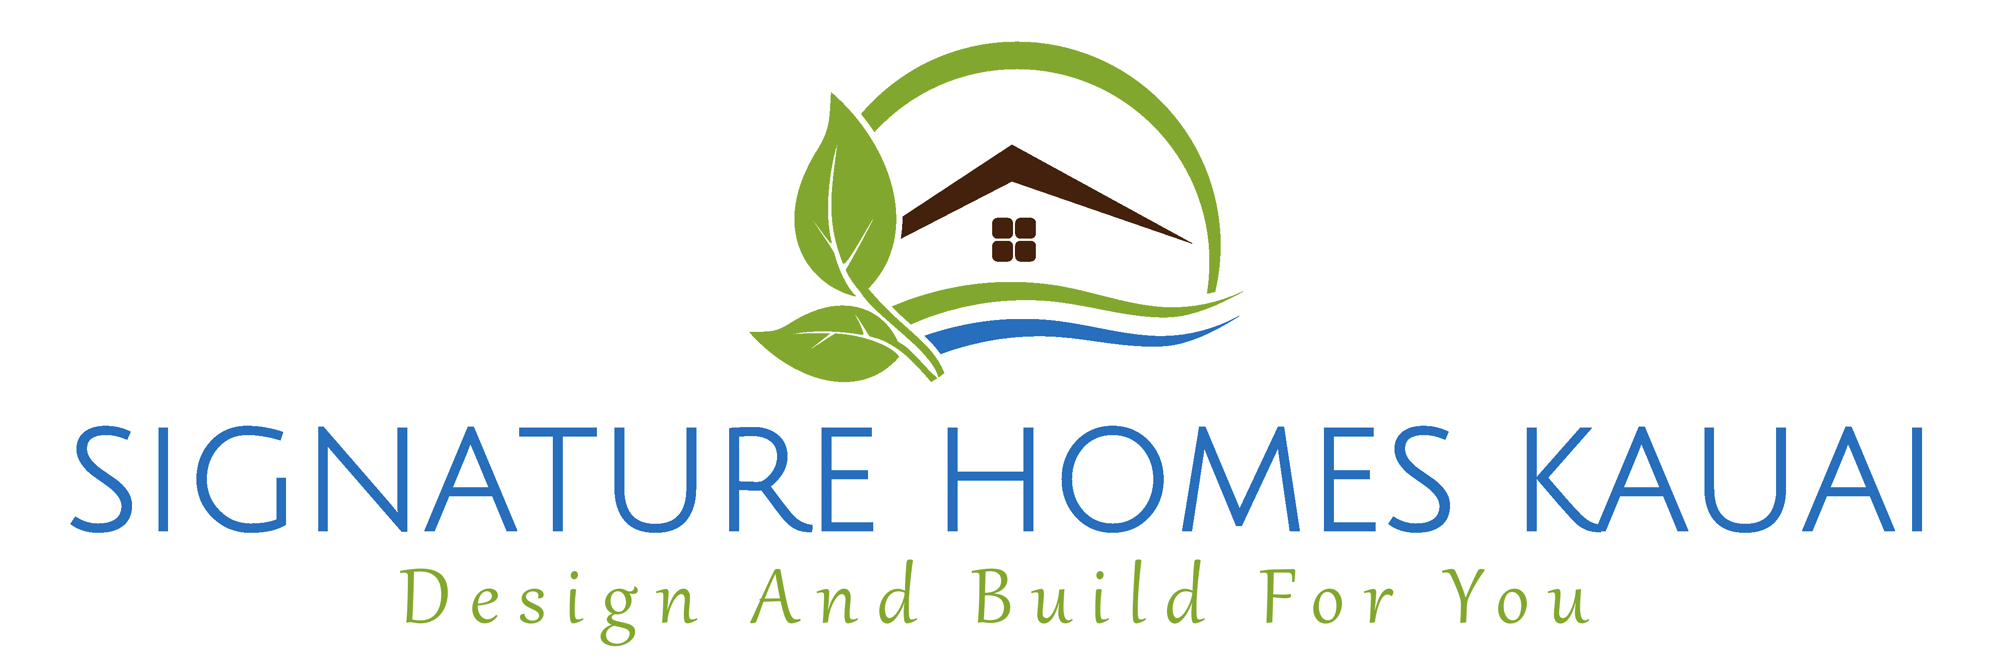 Signature Homes Kauai logo